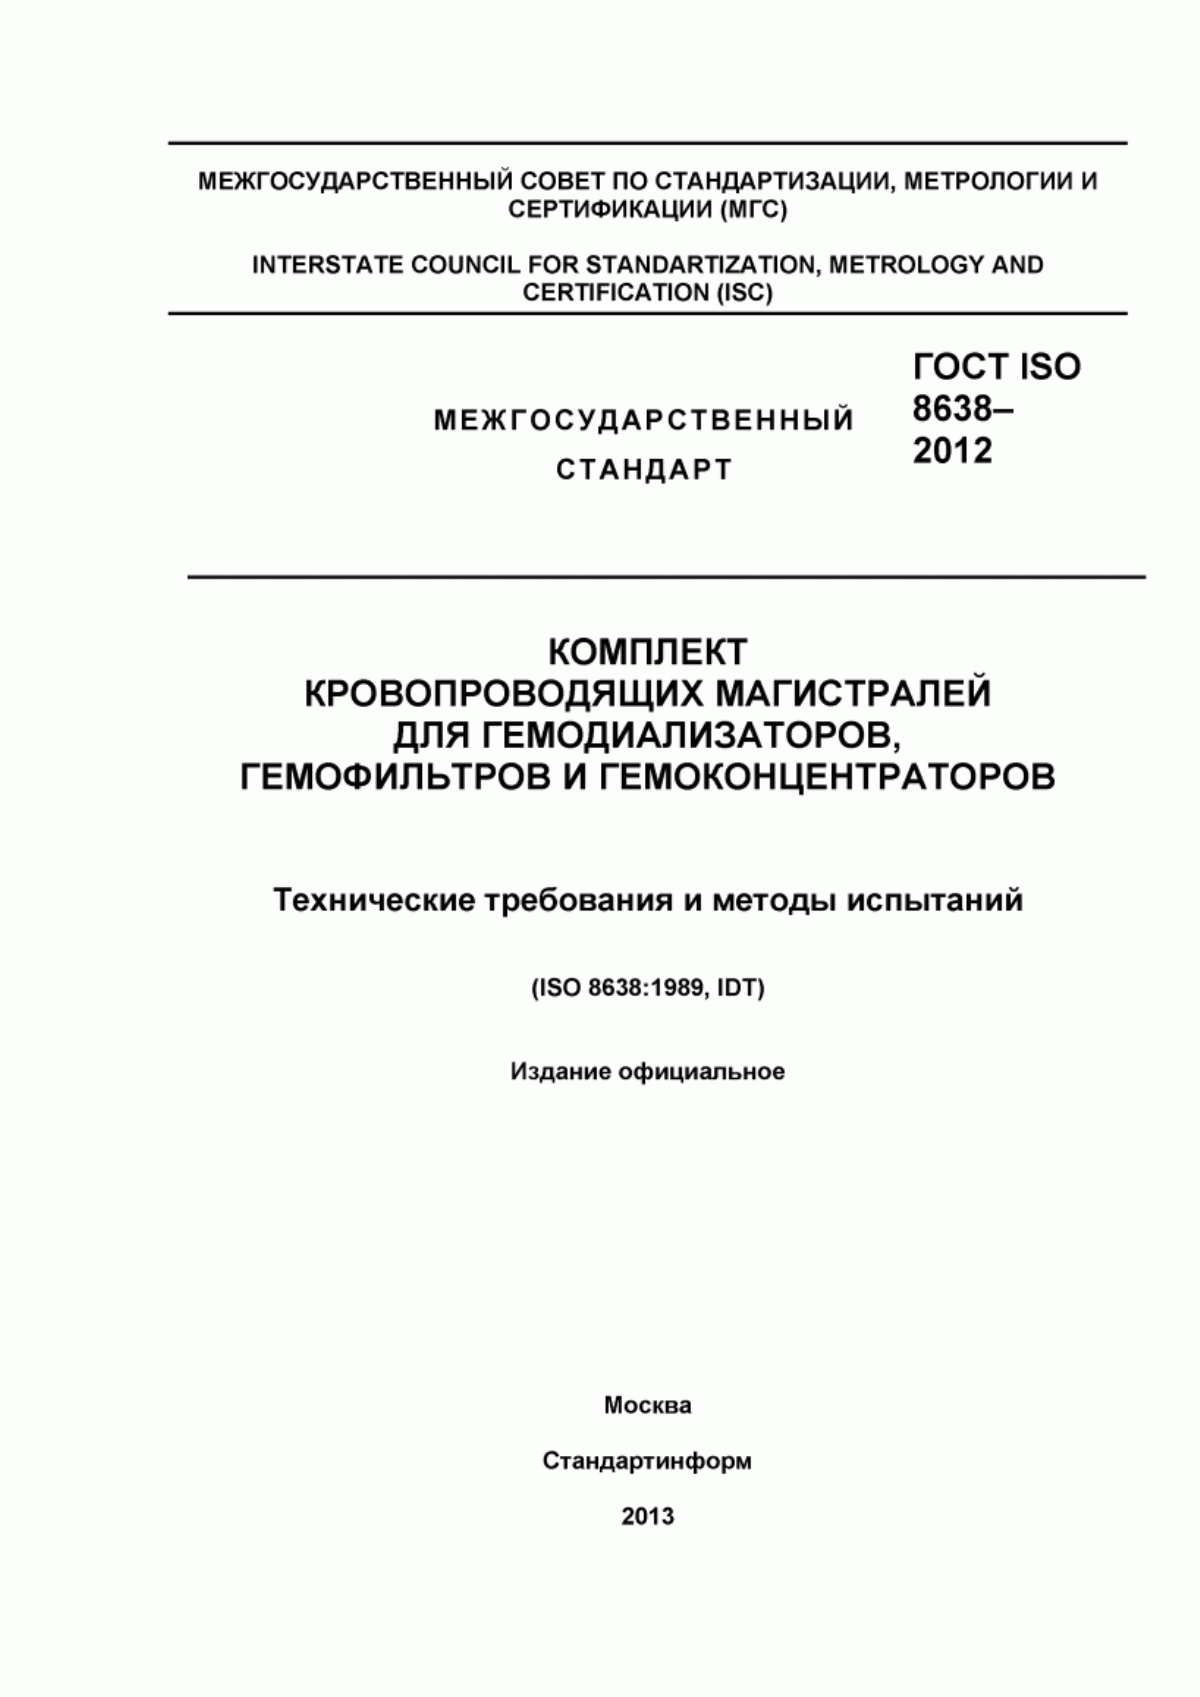 ГОСТ ISO 8638-2012 Комплект кровопроводящих магистралей для гемодиализаторов, гемофильтров и гемоконцентраторов. Технические требования и методы испытаний